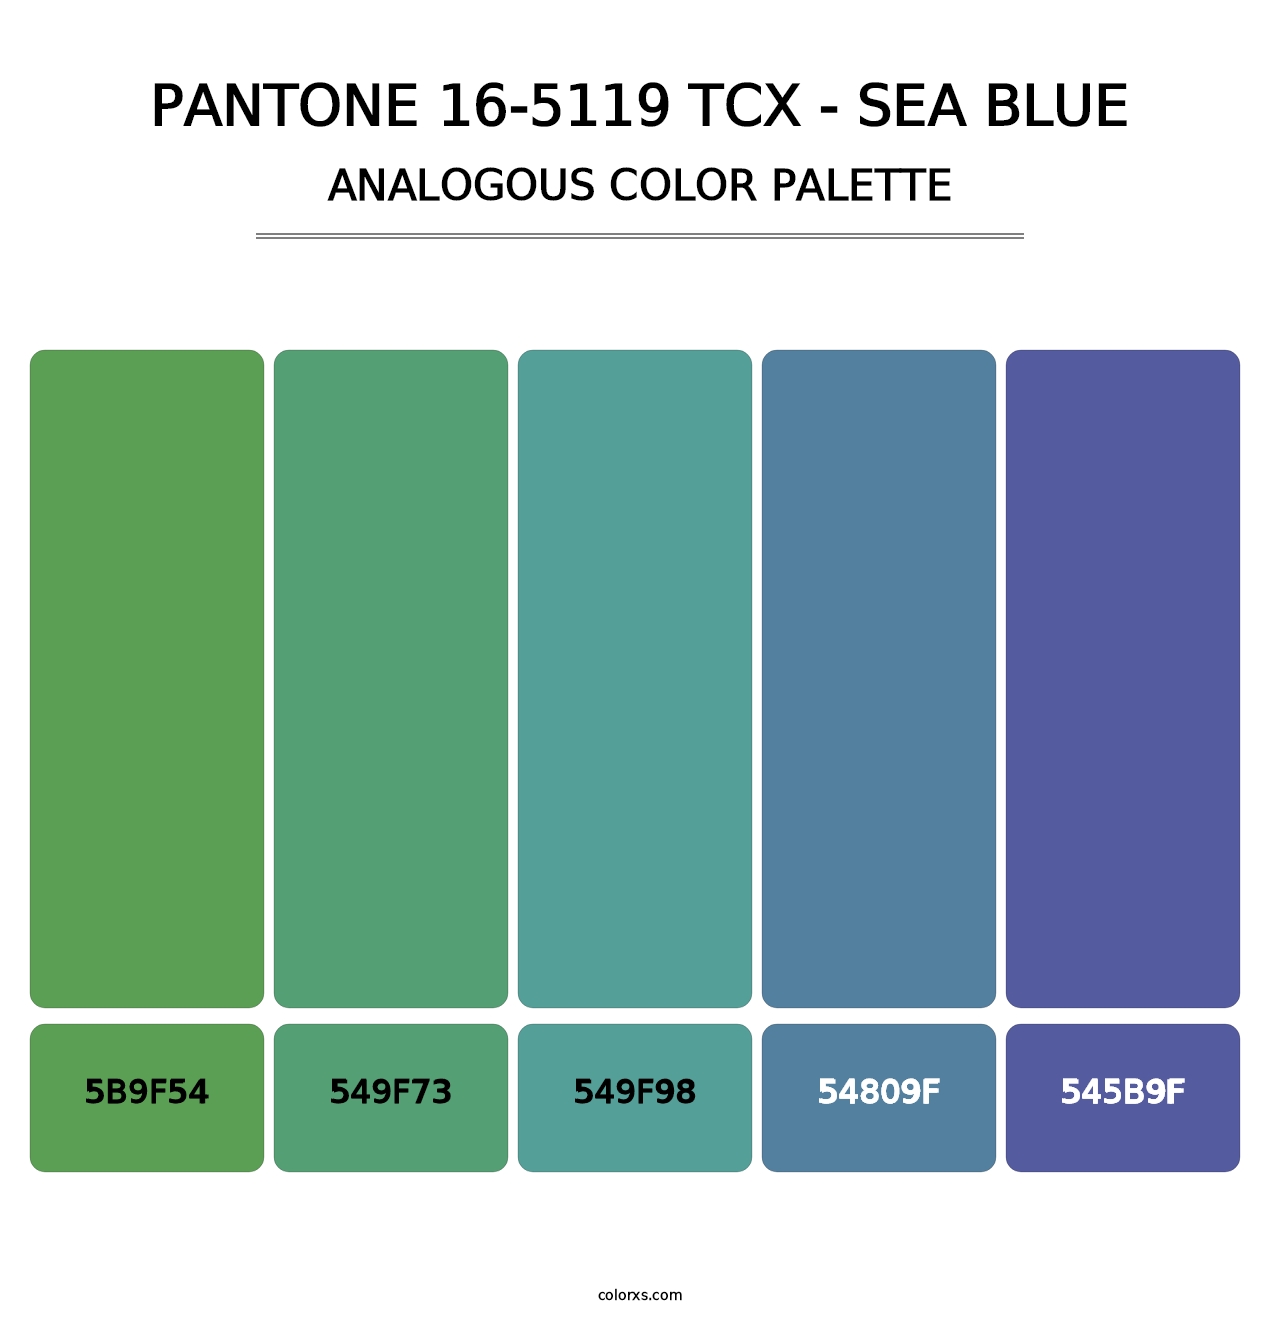 PANTONE 16-5119 TCX - Sea Blue - Analogous Color Palette